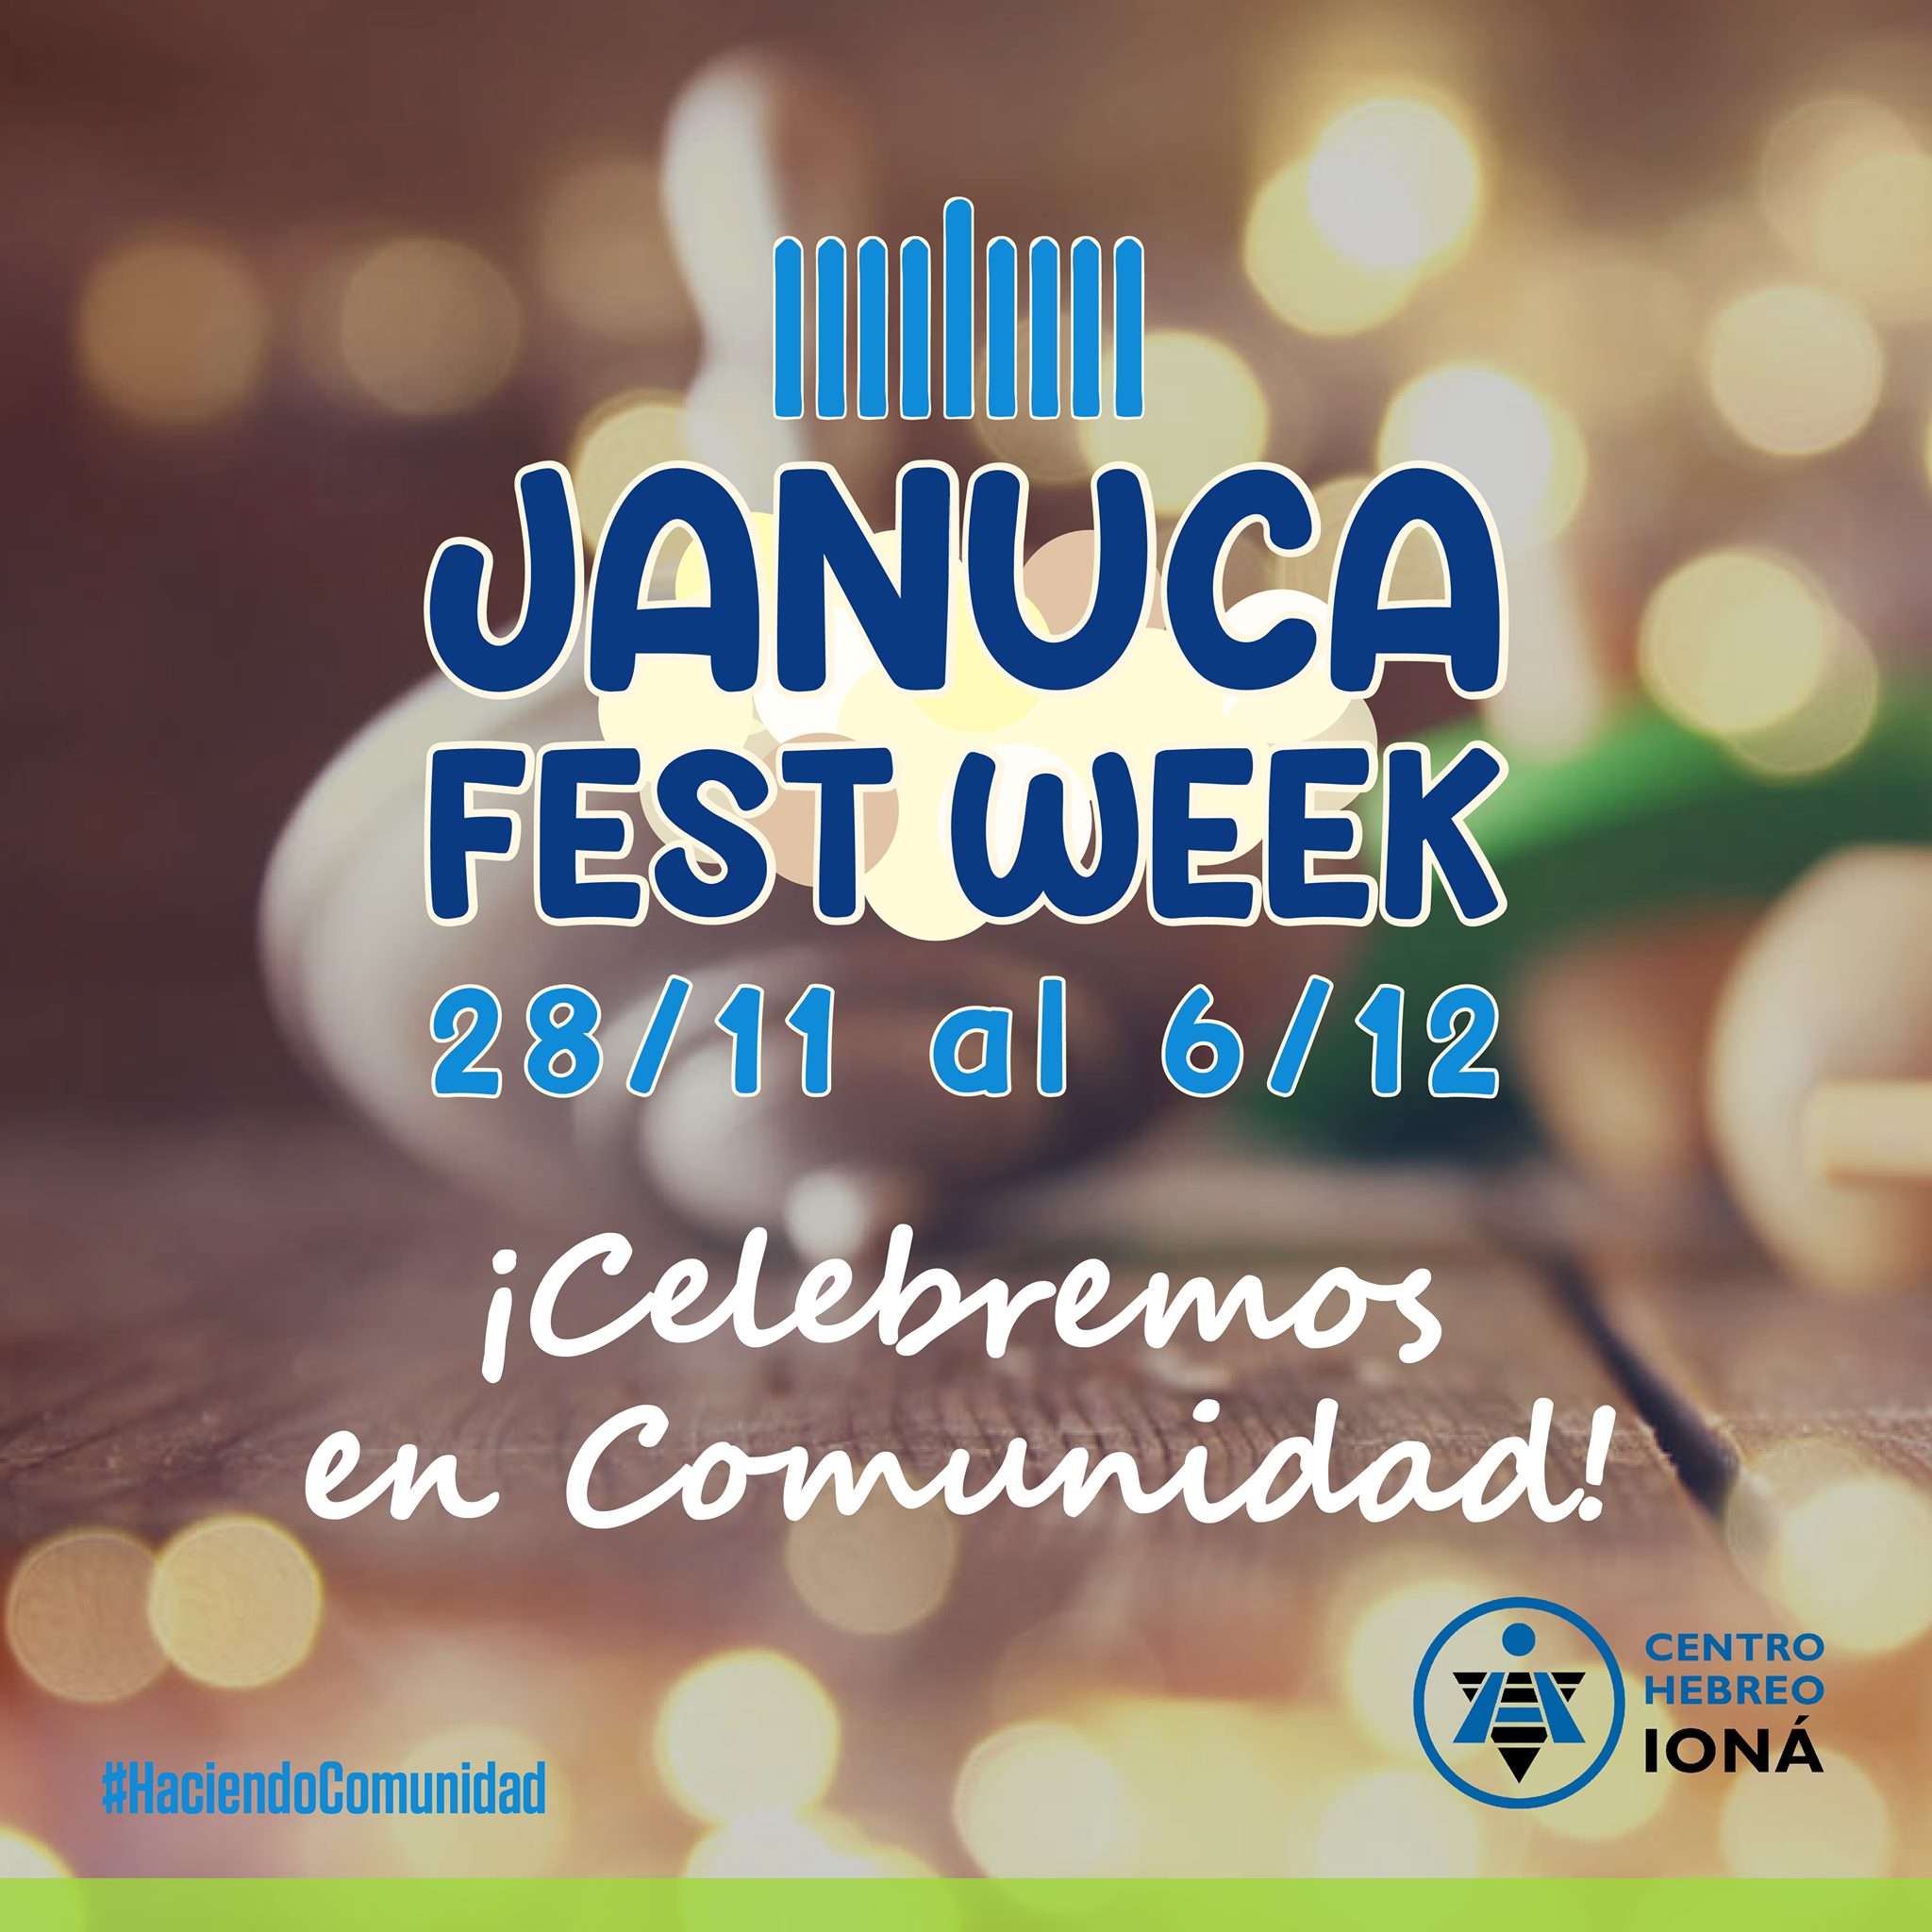 LLEGA EL JANUCA FEST WEEK